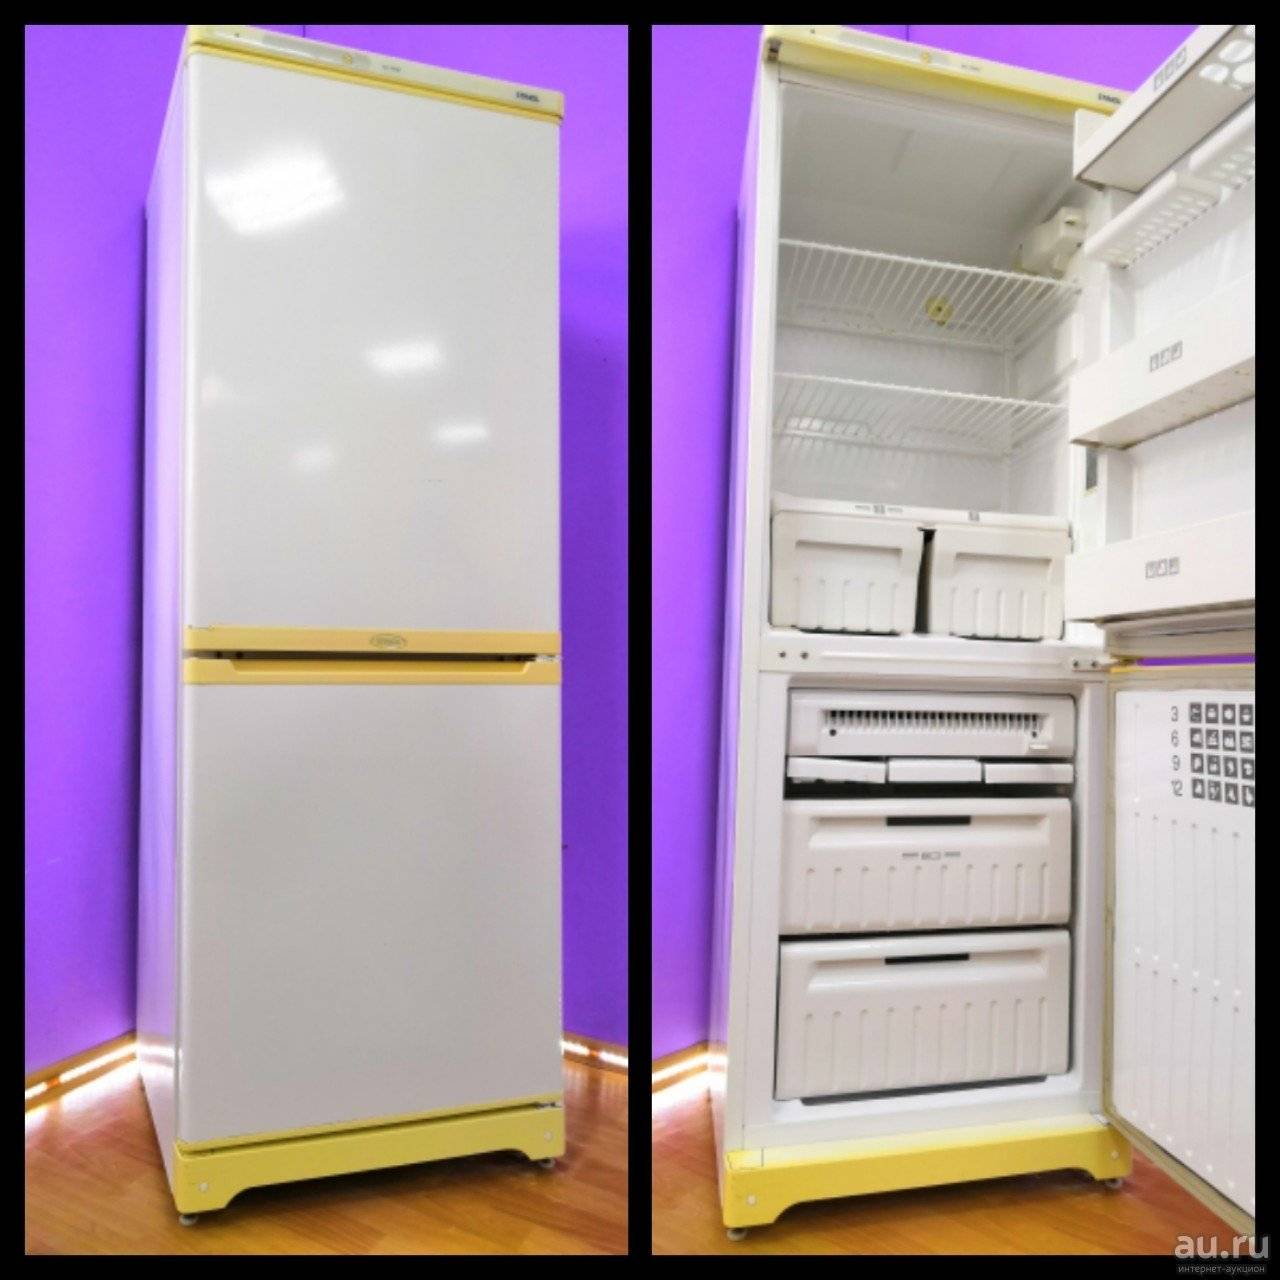 Срок службы холодильника. самые надежные холодильники. руководство по эксплуатации холодильника